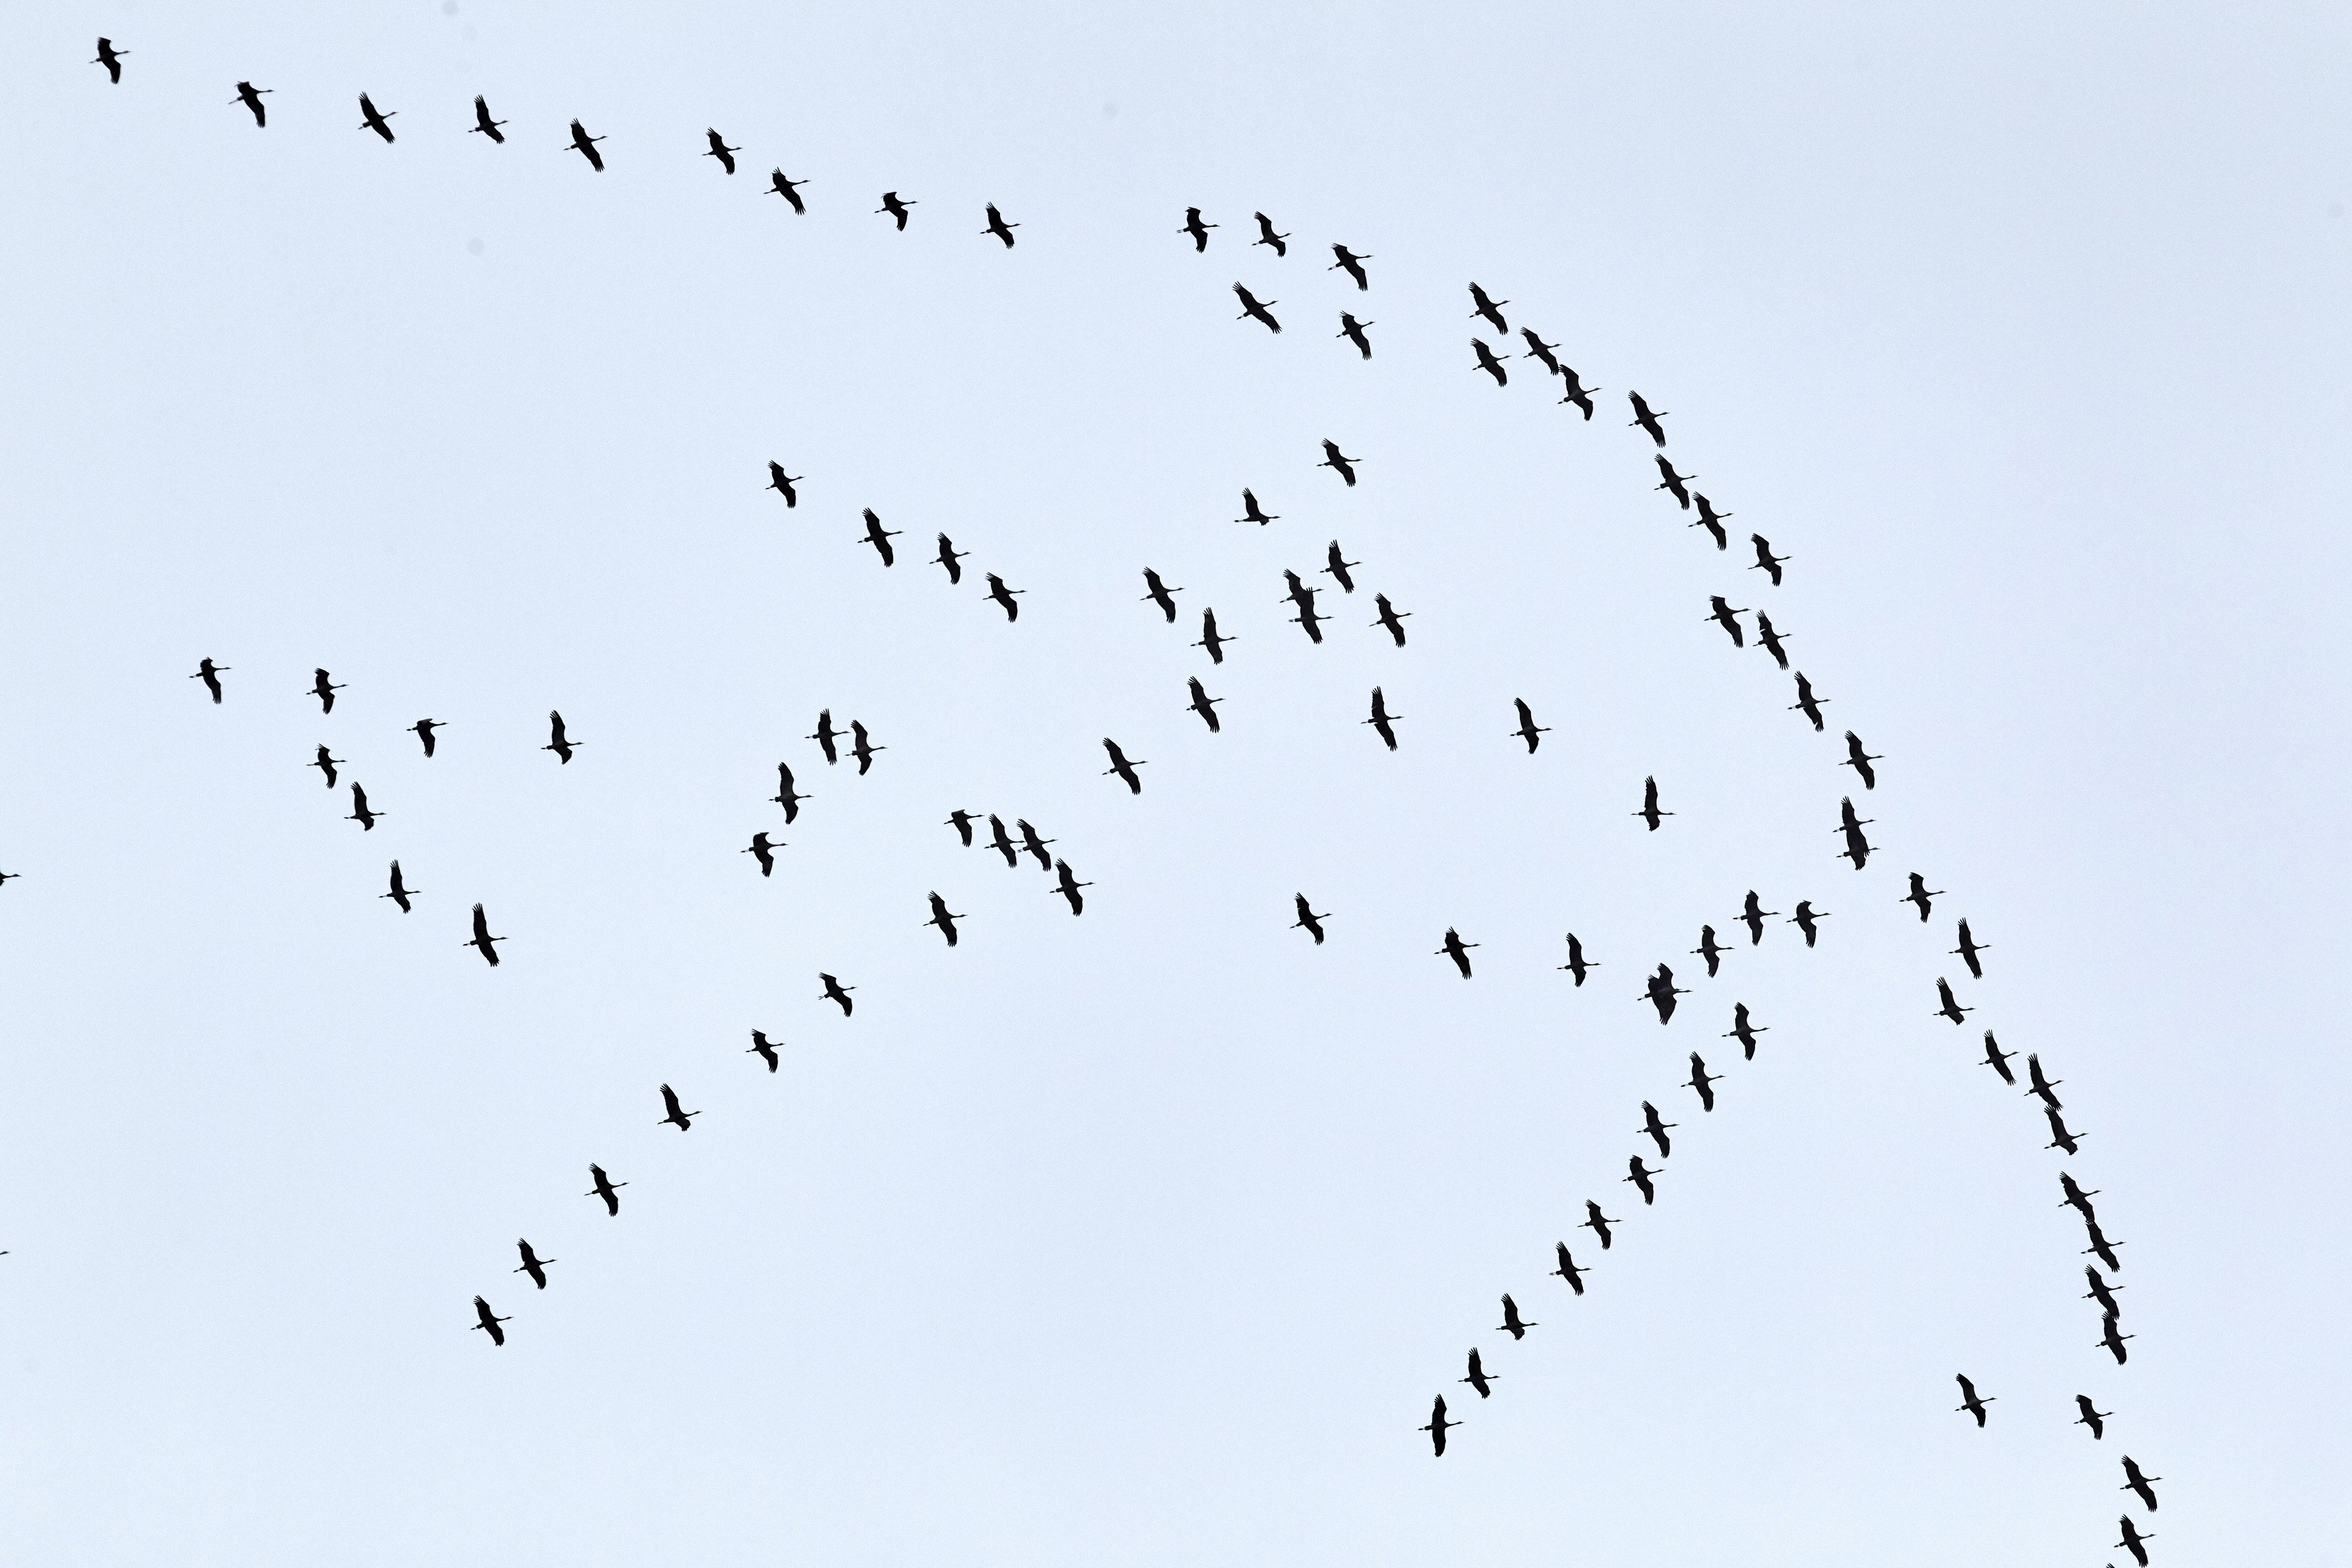 5,2 millió vonuló madarat számoltak össze az önkéntes madármegfigyelők